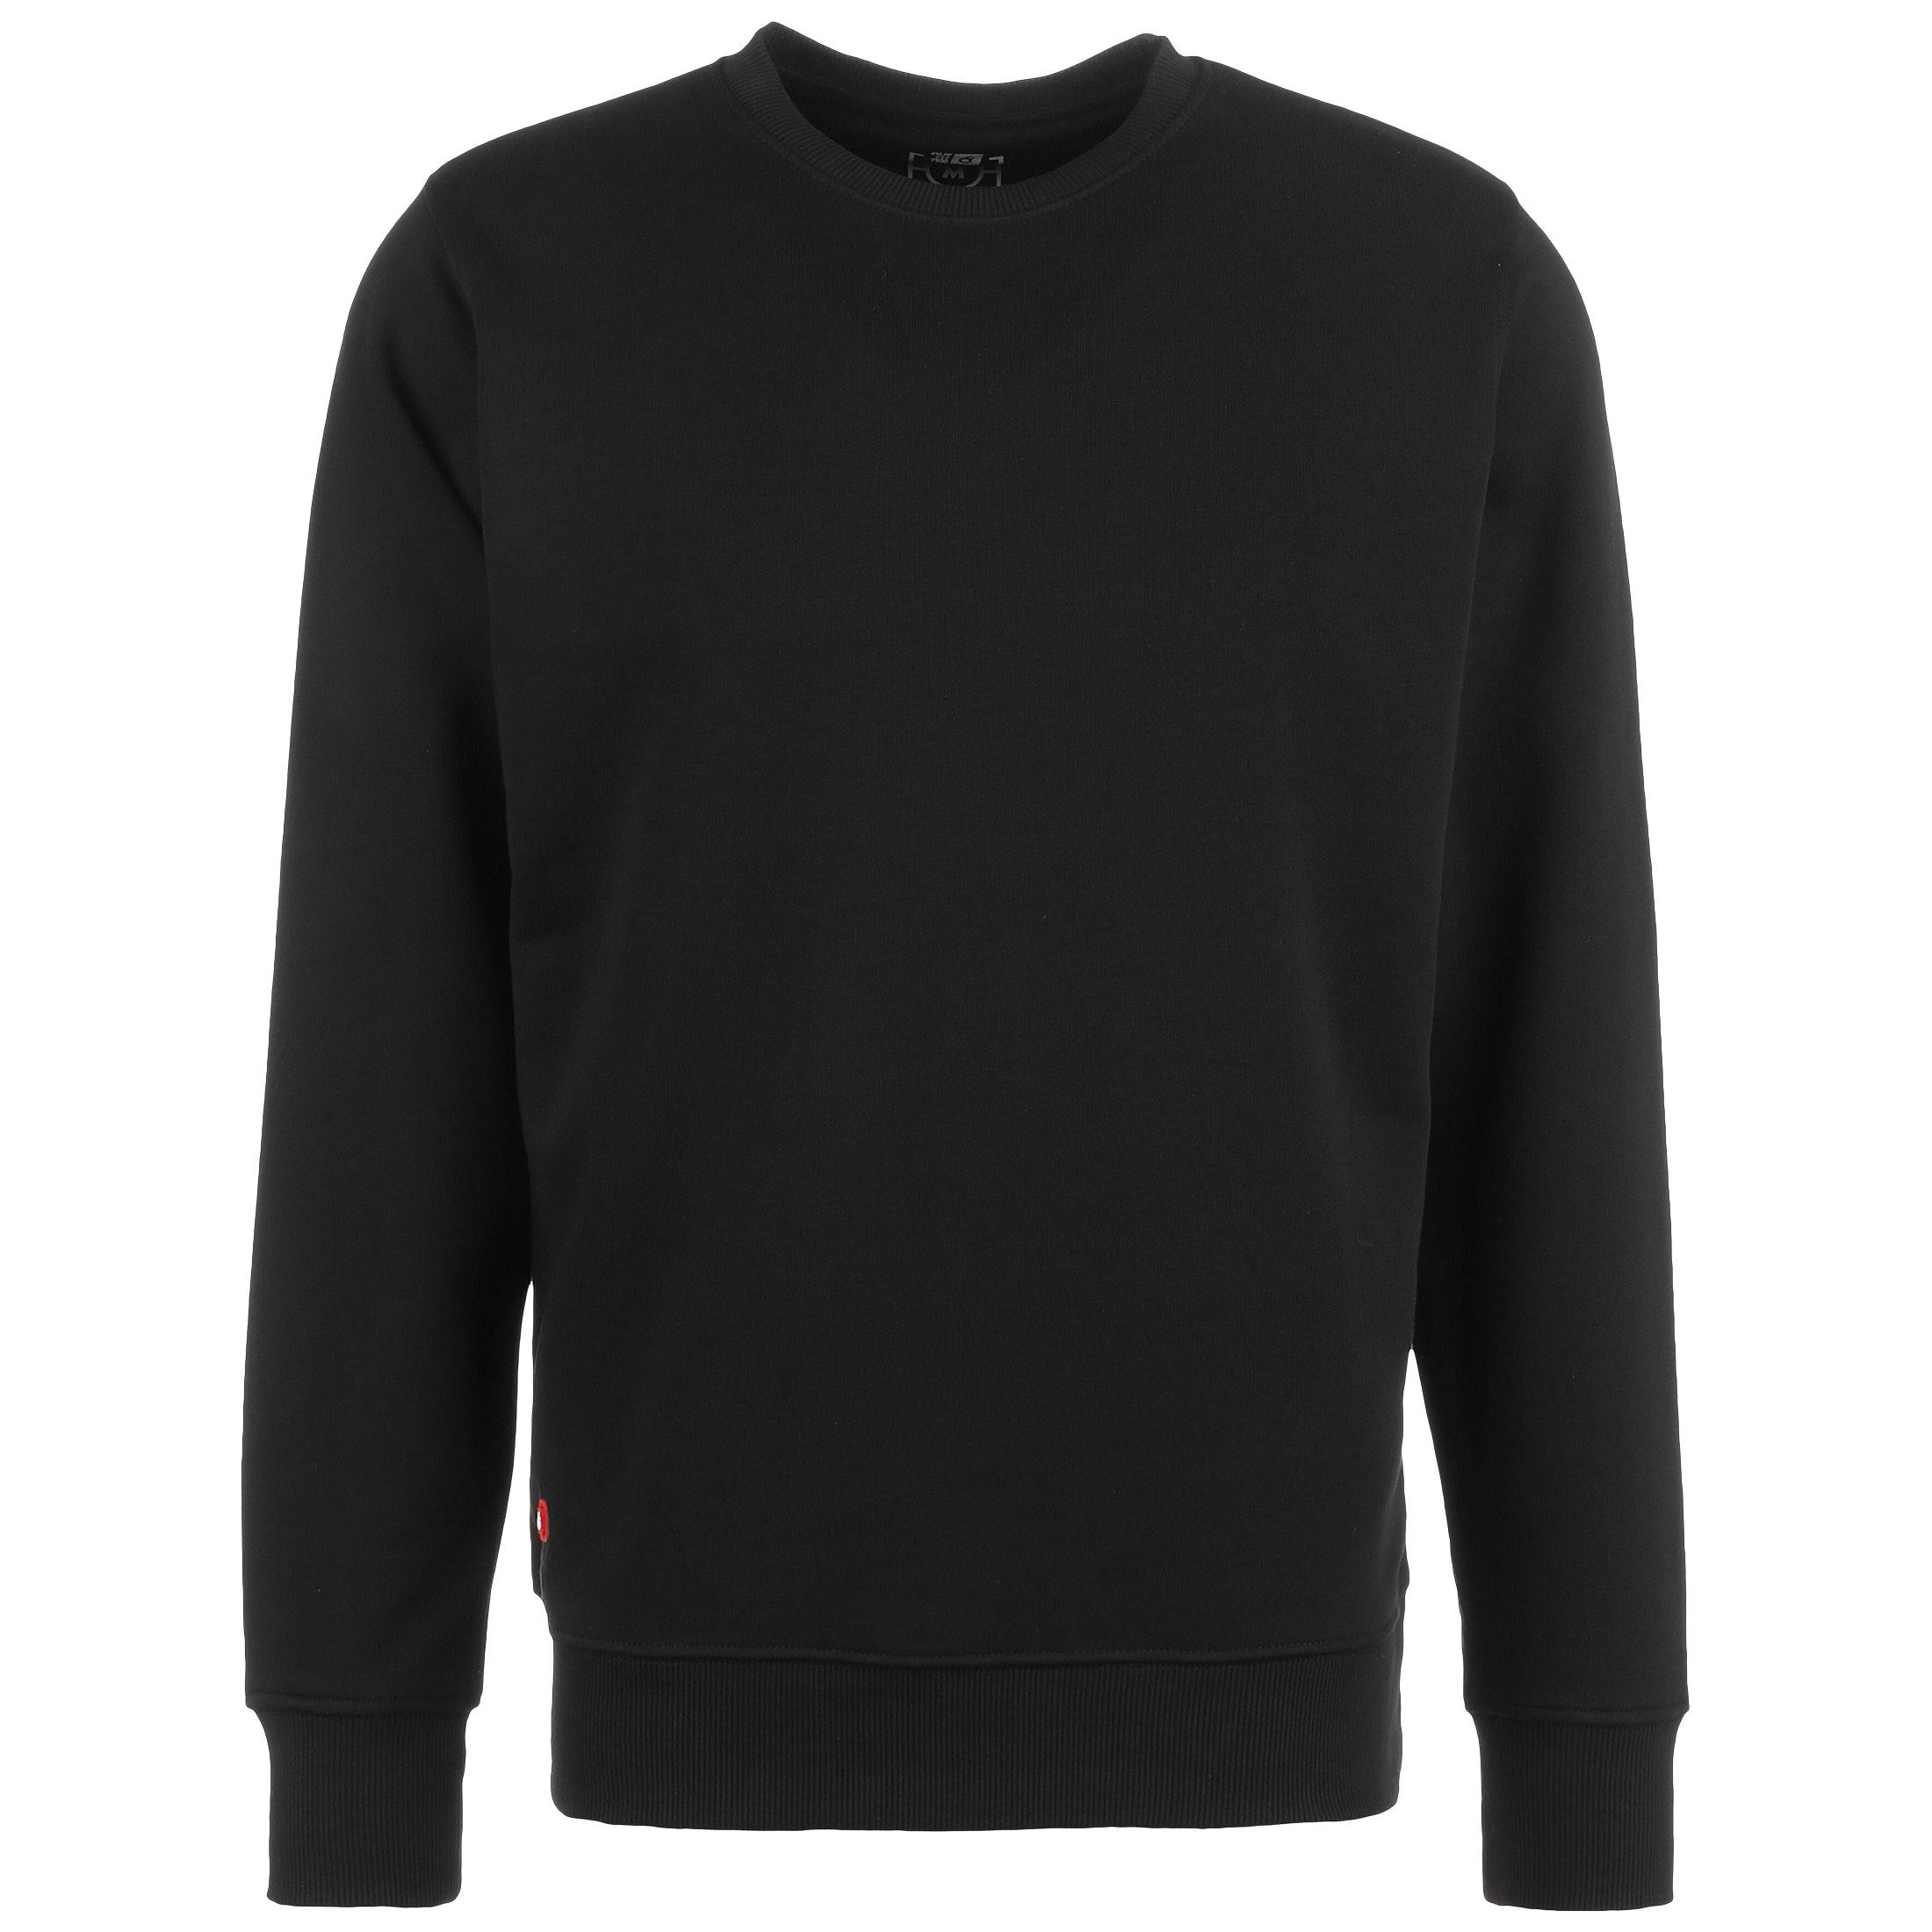 Outfitter Sweatshirt Frankfurt Kickt Alles Sweater